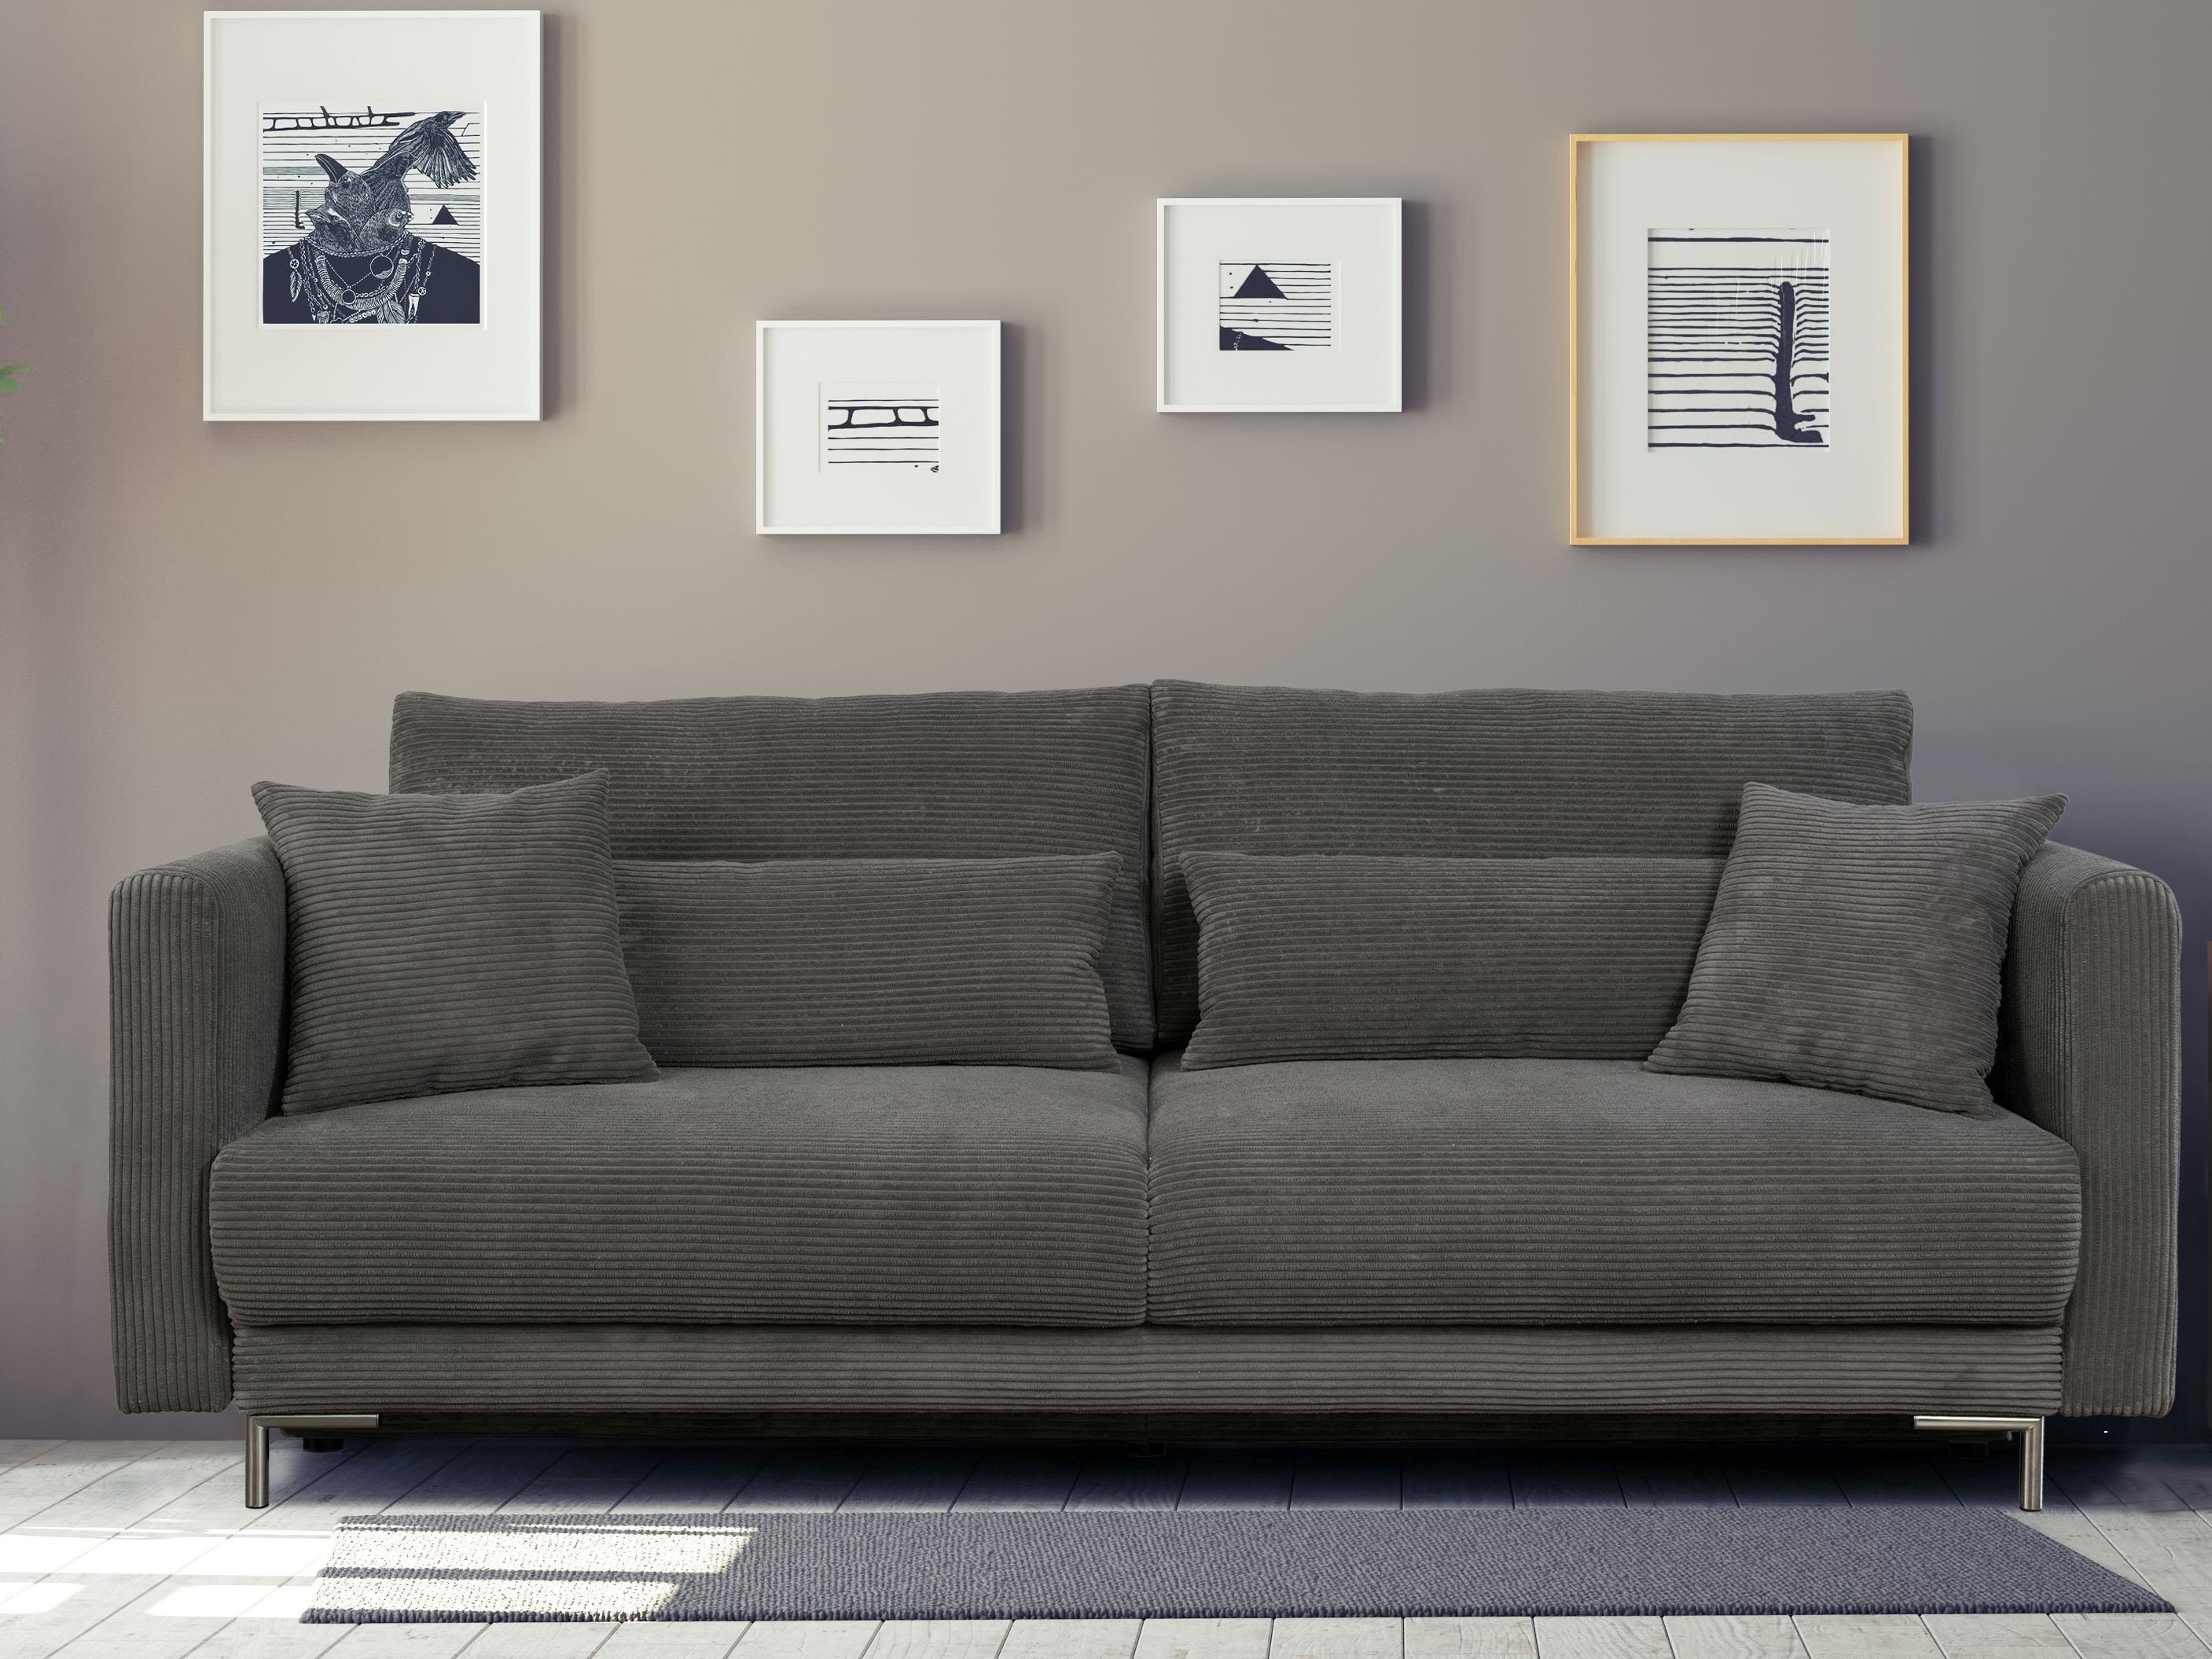 Möbel für Dich Schlafsofa Premium Cord Sofa Rico, mit Kaltschaumpolsterung und Bettfunktion, Cordbezug, Kaltschaumpolsterung